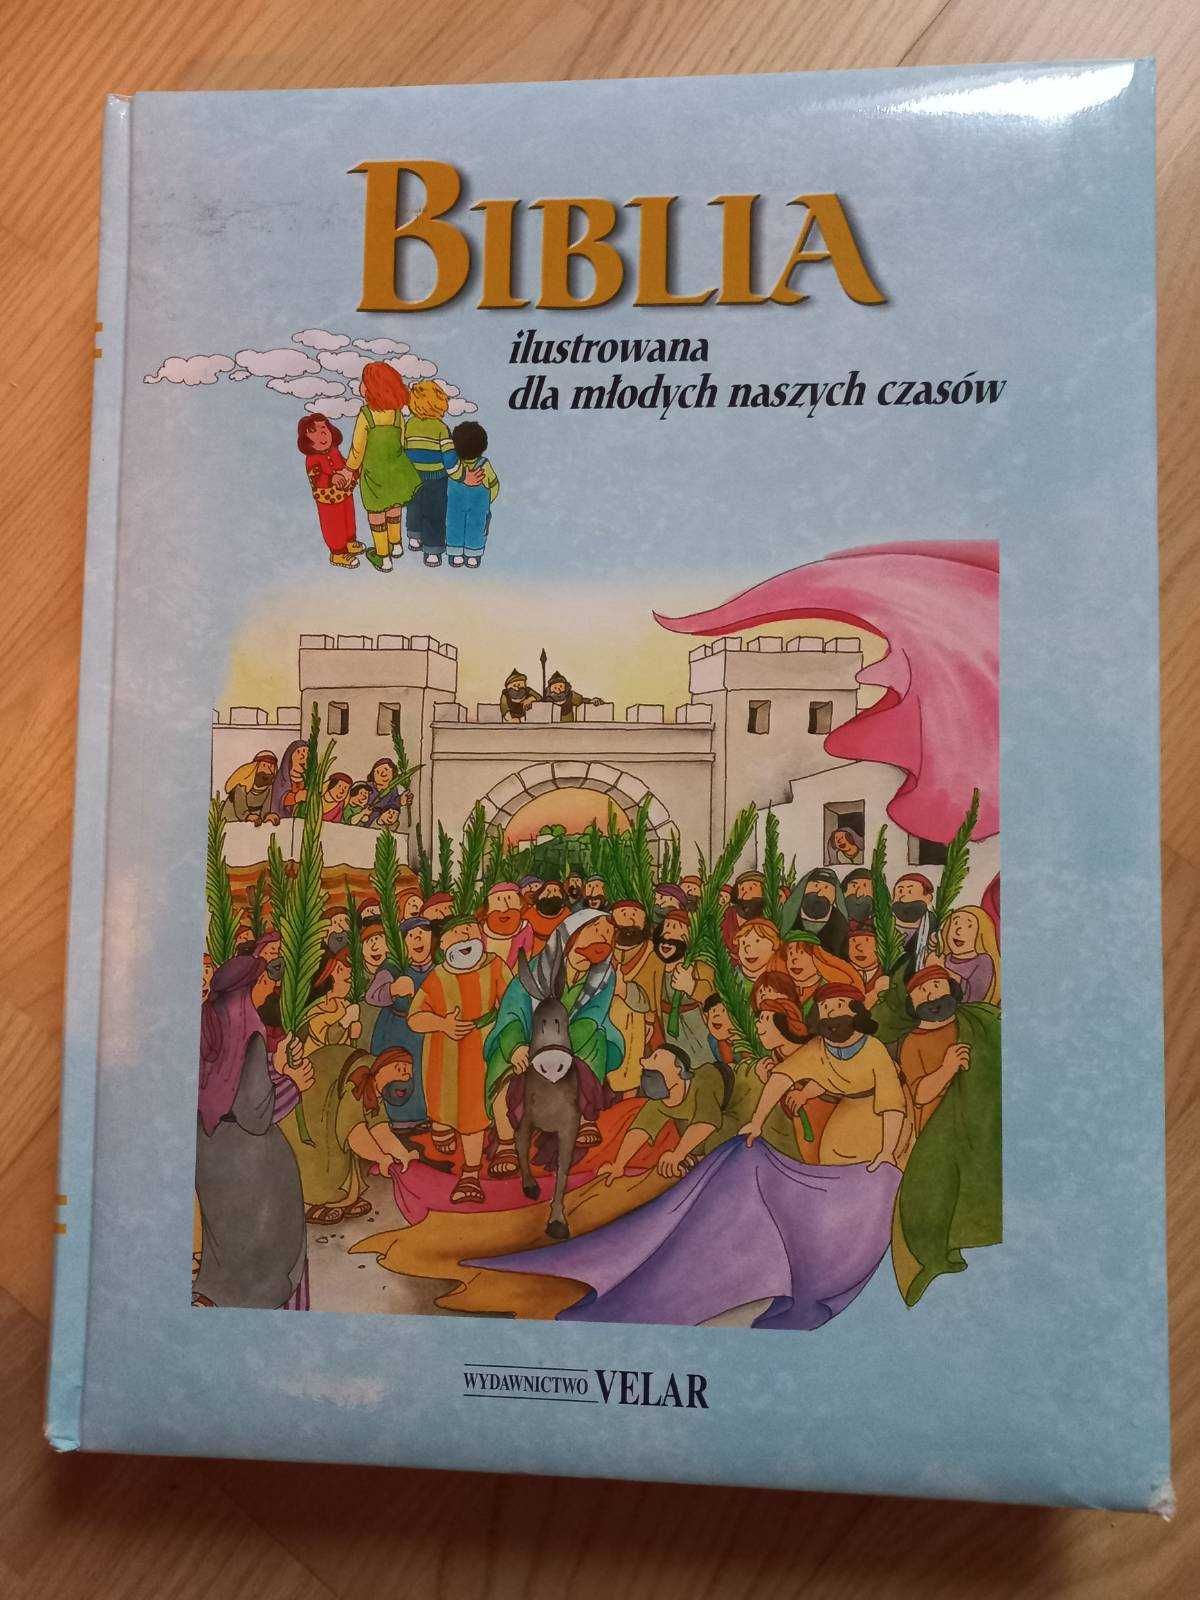 Biblita ilustrowana dla młodych naszych czasów